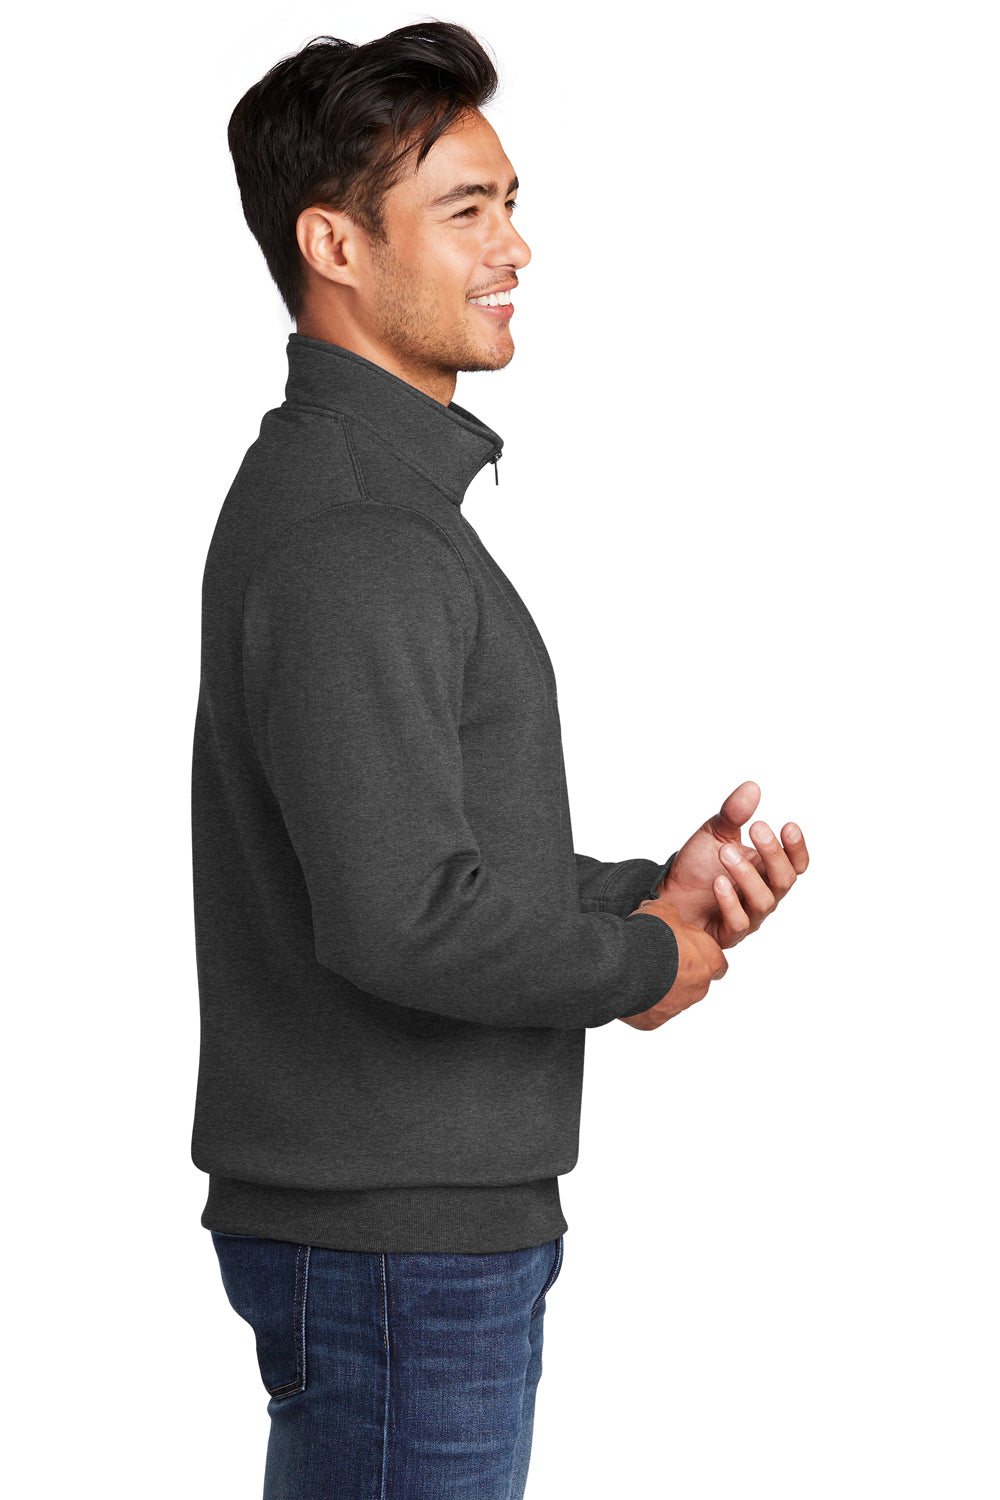 Port & Company Mens Core Fleece 1/4 Zip Sweatshirt Heather Dark Grey Side